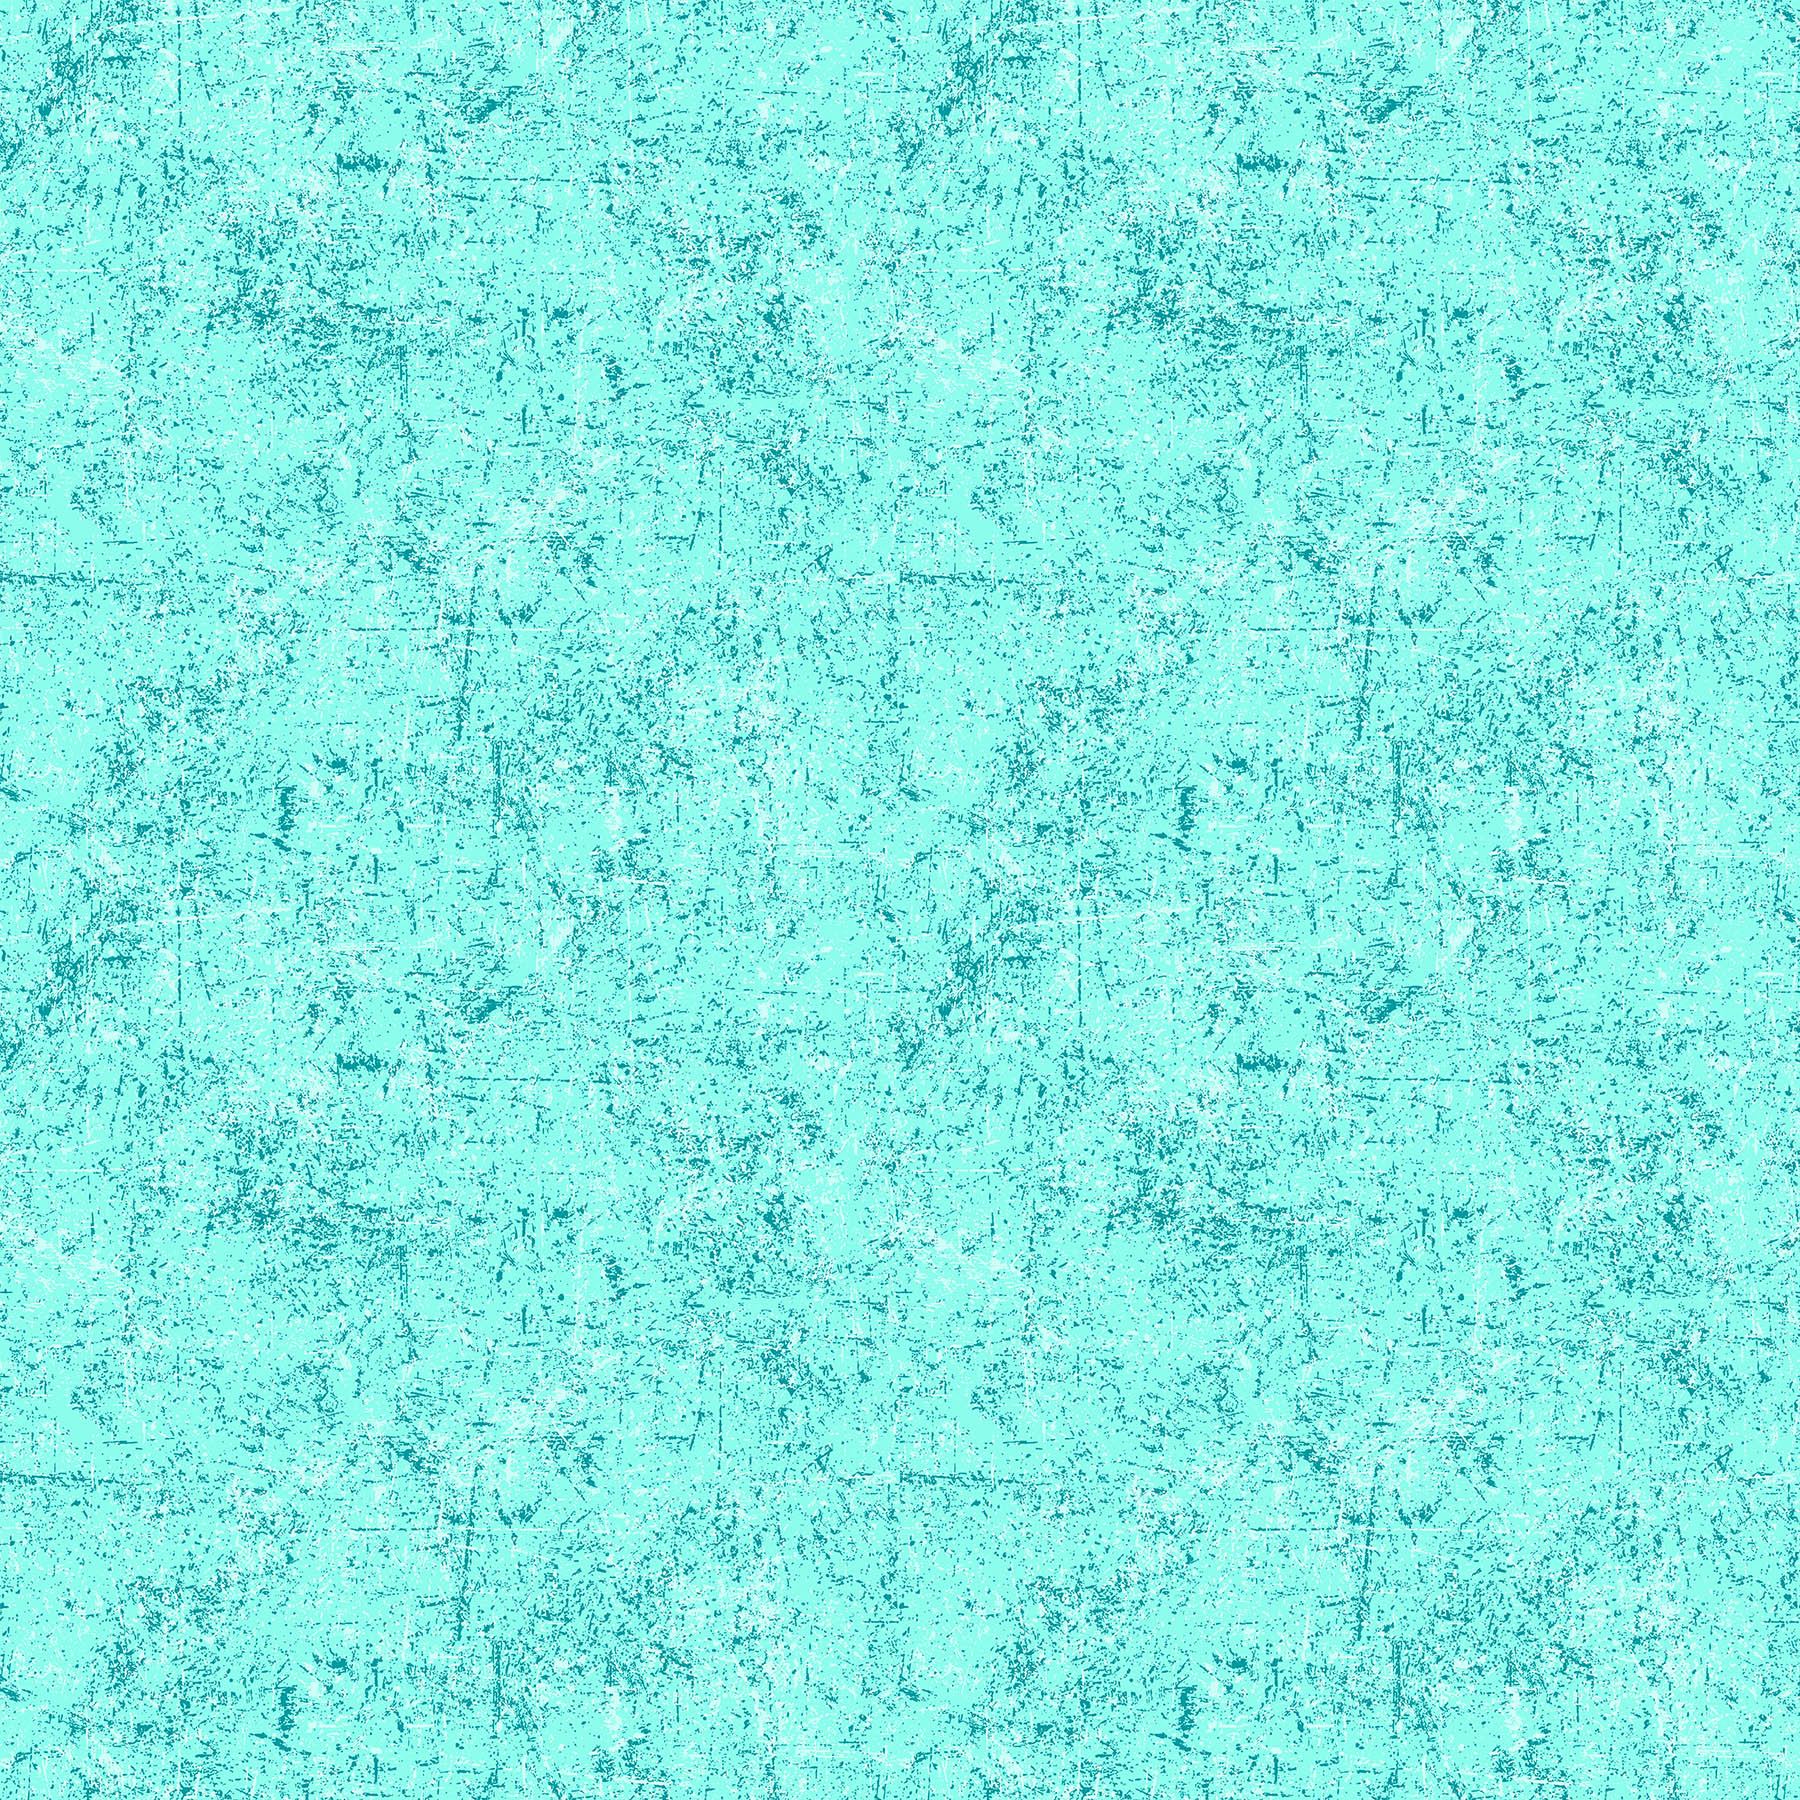 Glisten Quilt Fabric - Blender in Seafoam Aqua - P10091-61